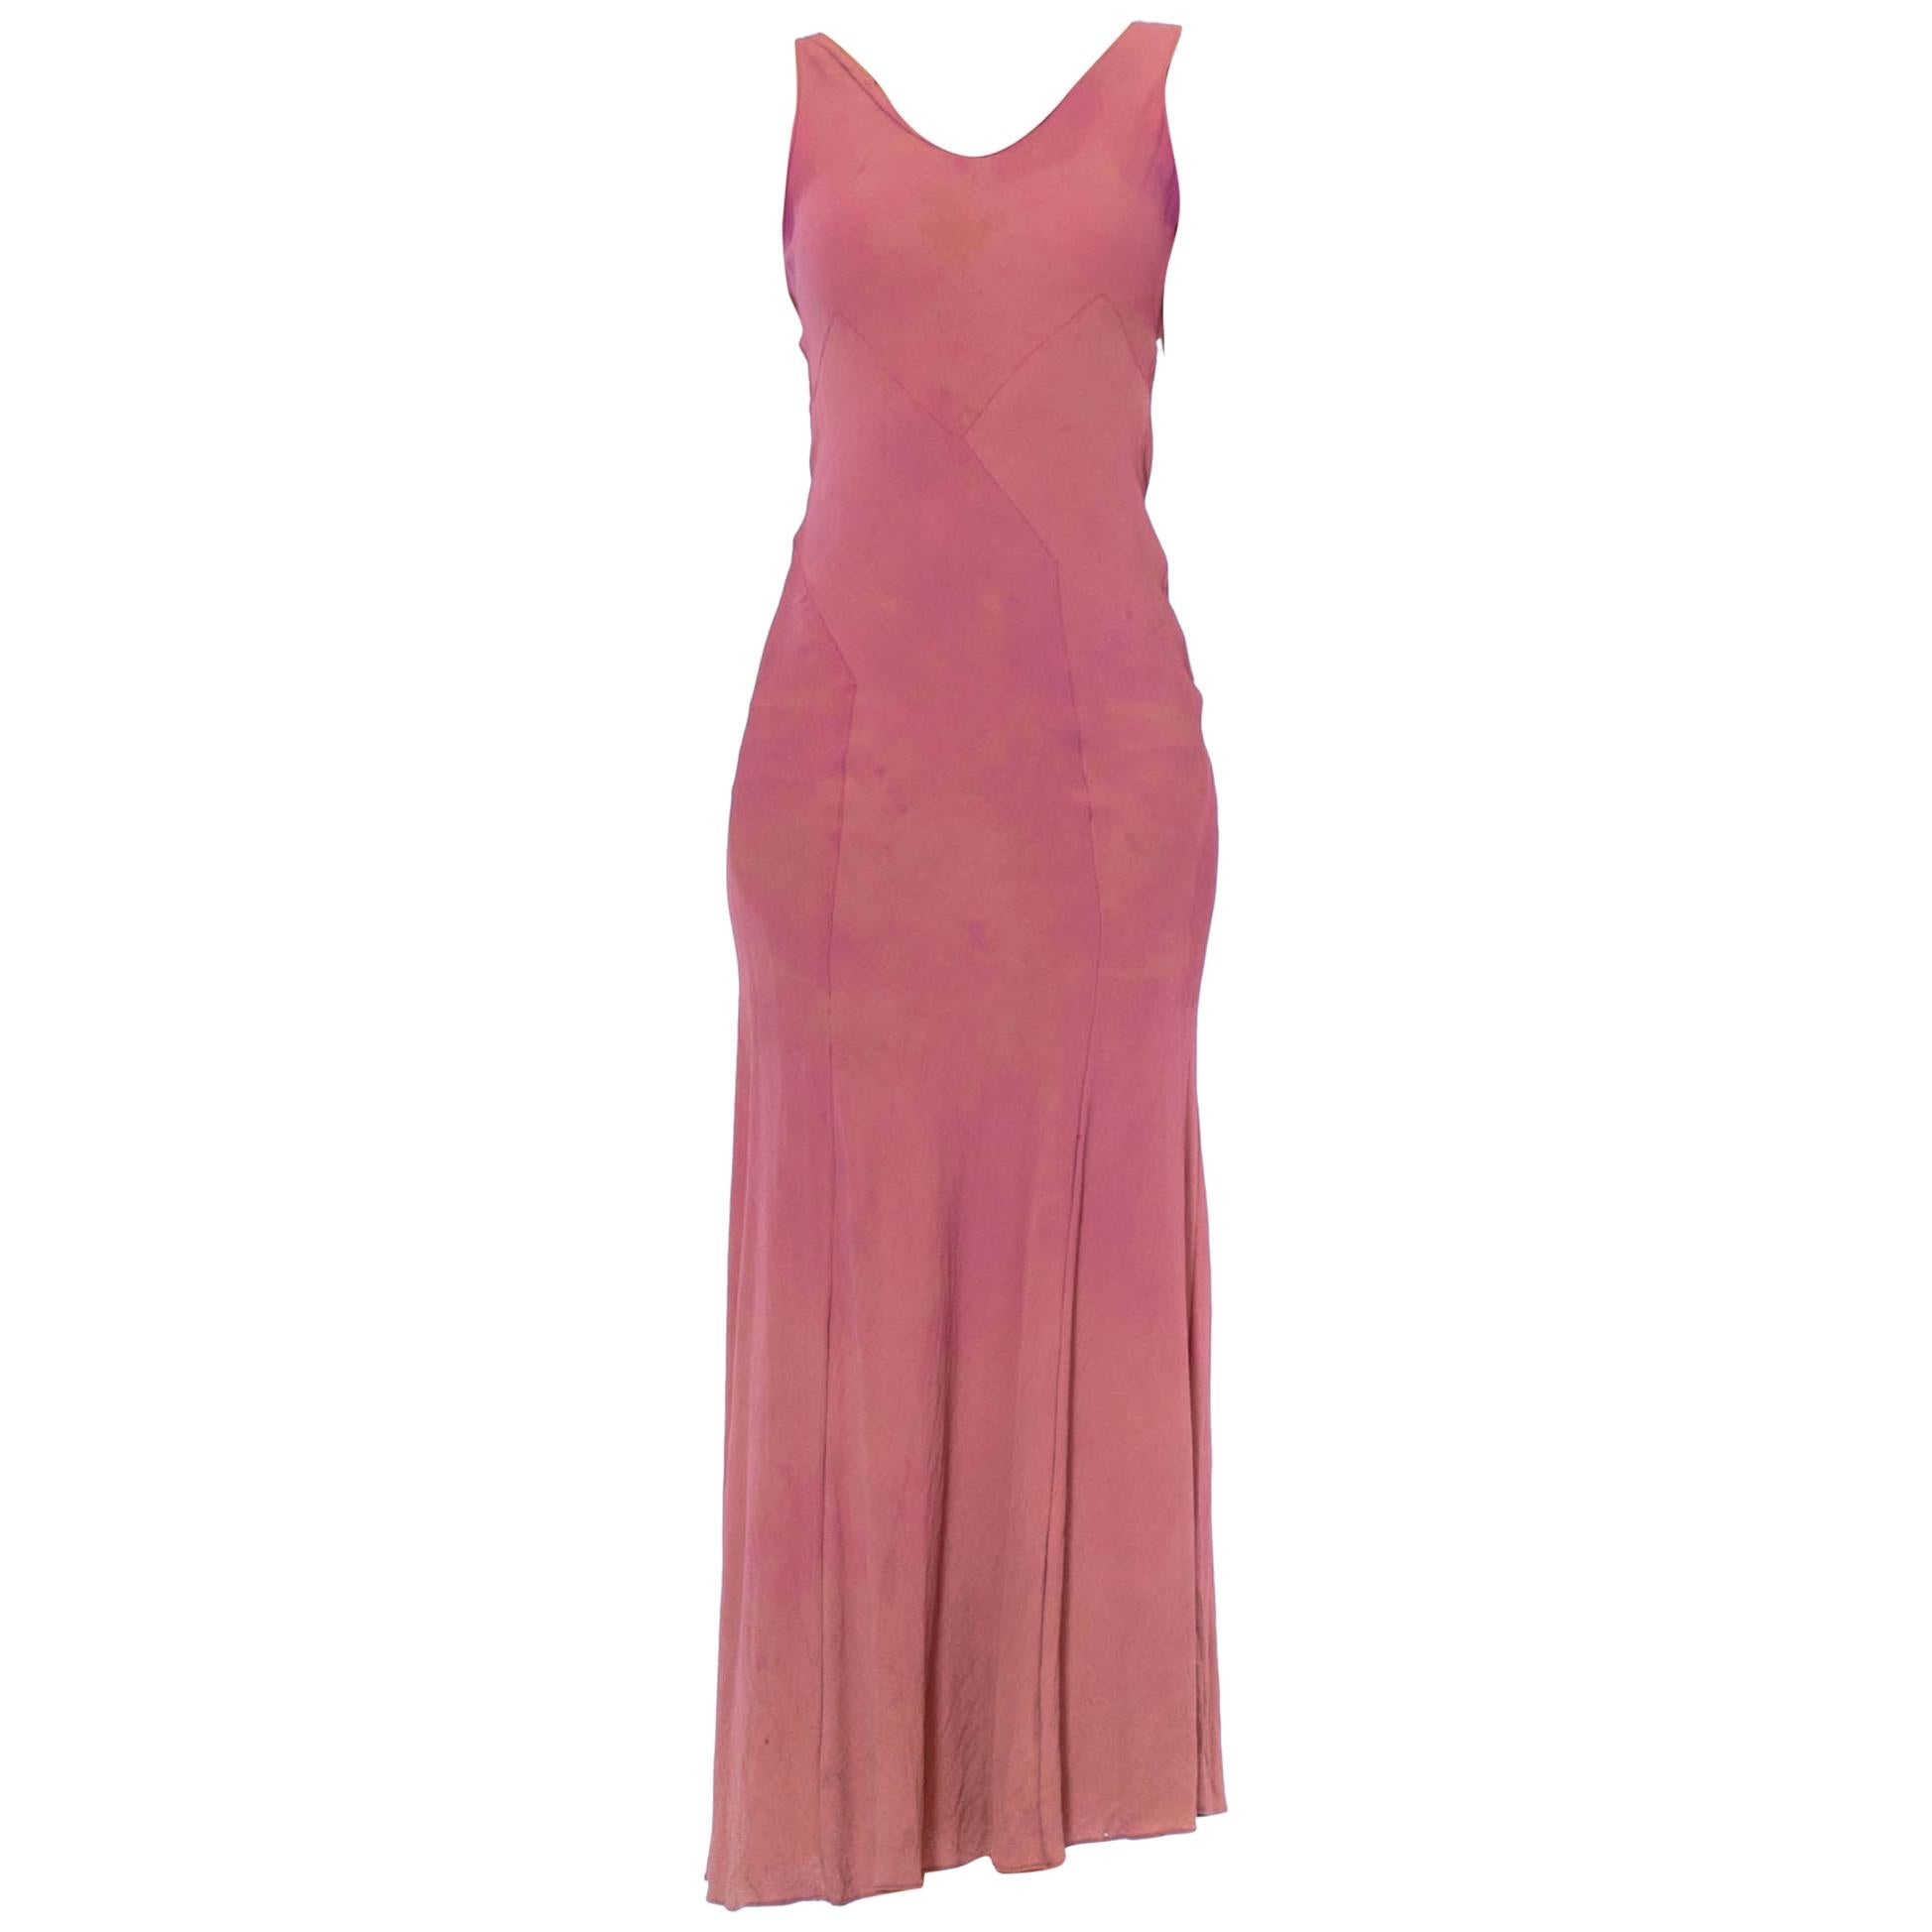 Lila Rayon-Krepp-Kleid im Vionnet-Stil, ingenious Twisting Bias, As-